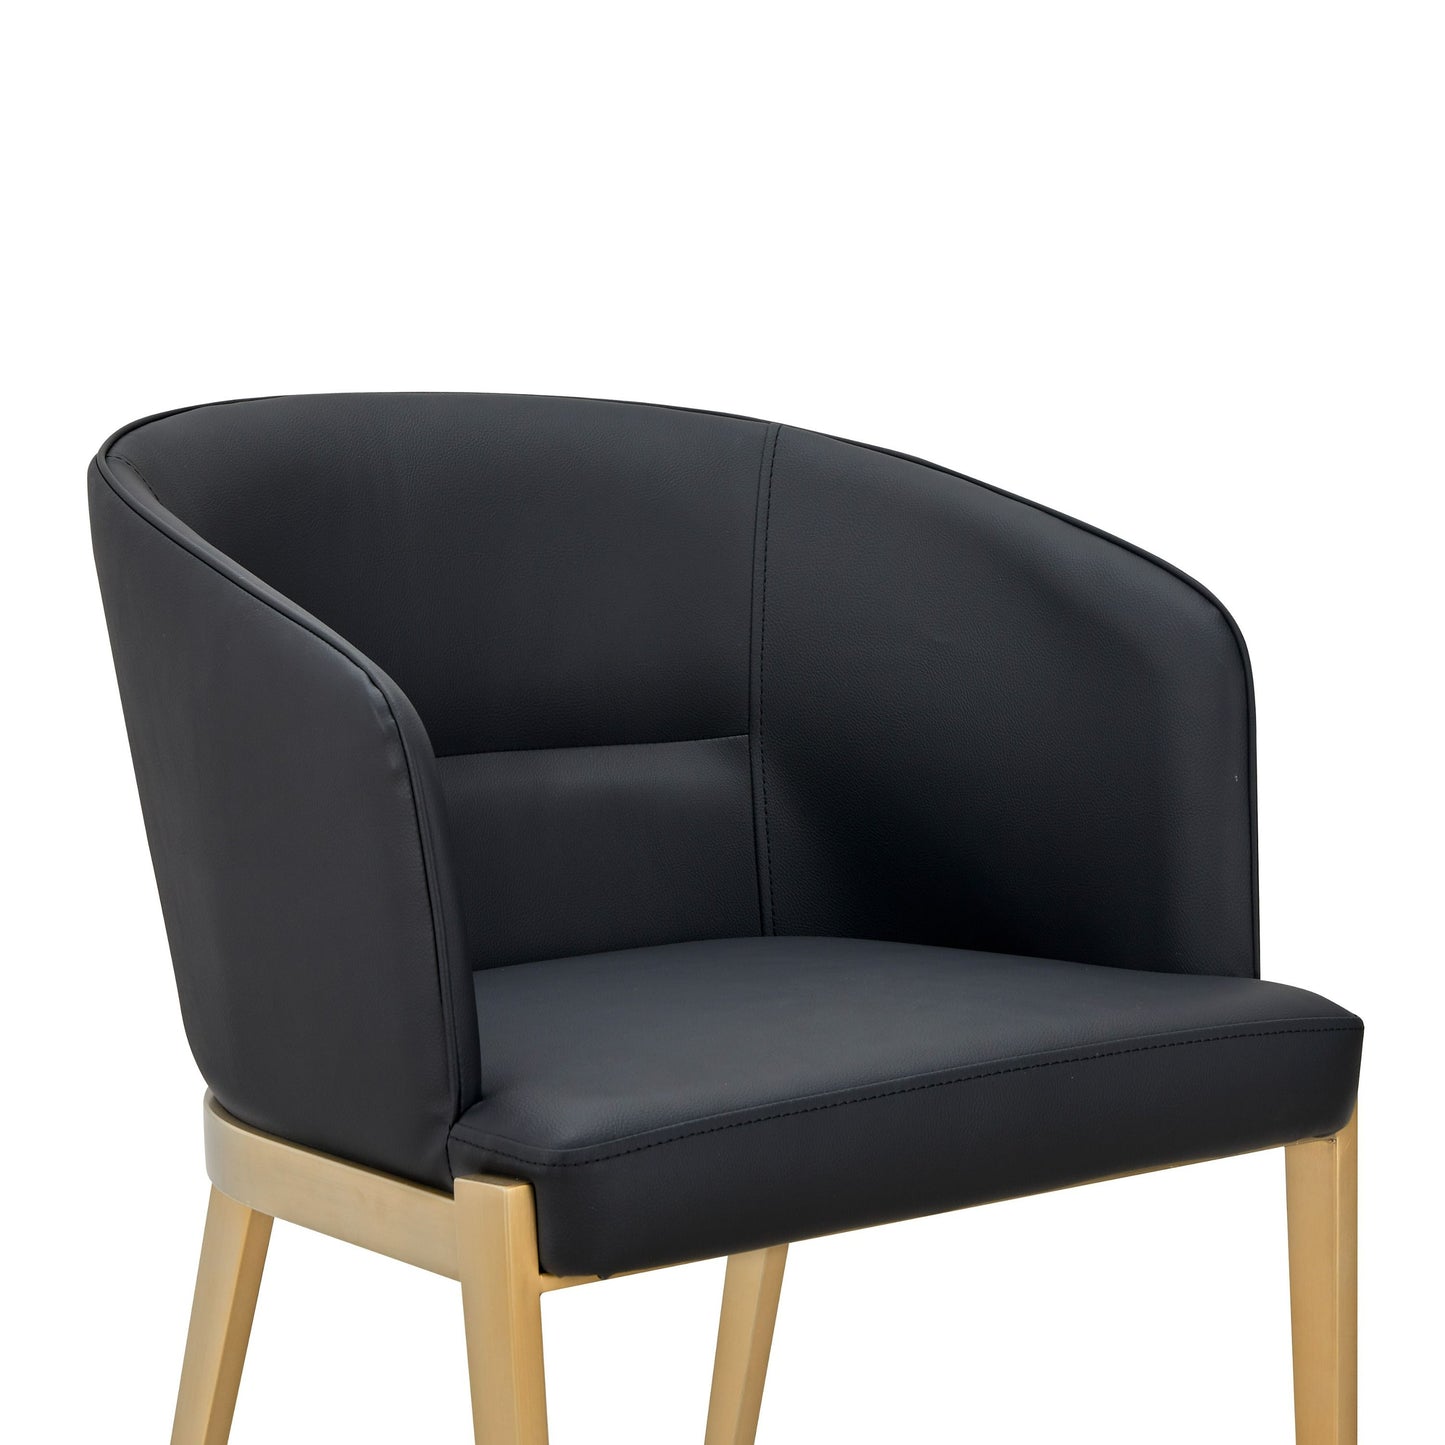 Modrest Kravitz - Modern Dark Grey Vegan Leather + Antique Brass Dining Chair